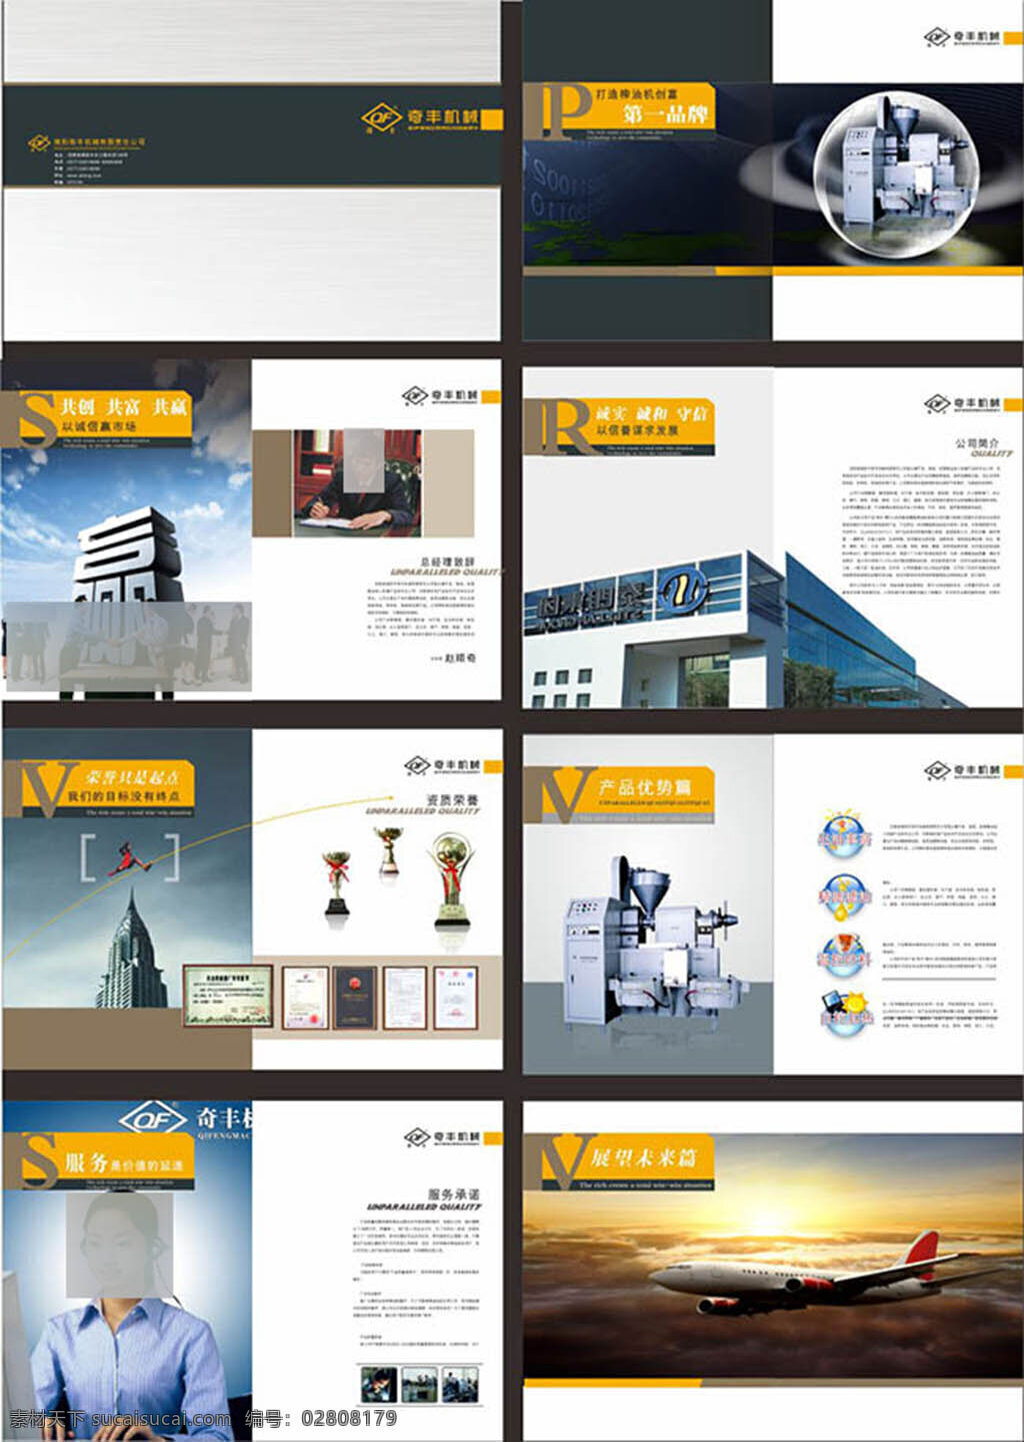 机械 公司 画册设计 模板 素 材下载 企业画册 画册模板 机械企业画册 品牌 形象 品牌设计 宣传册 白色